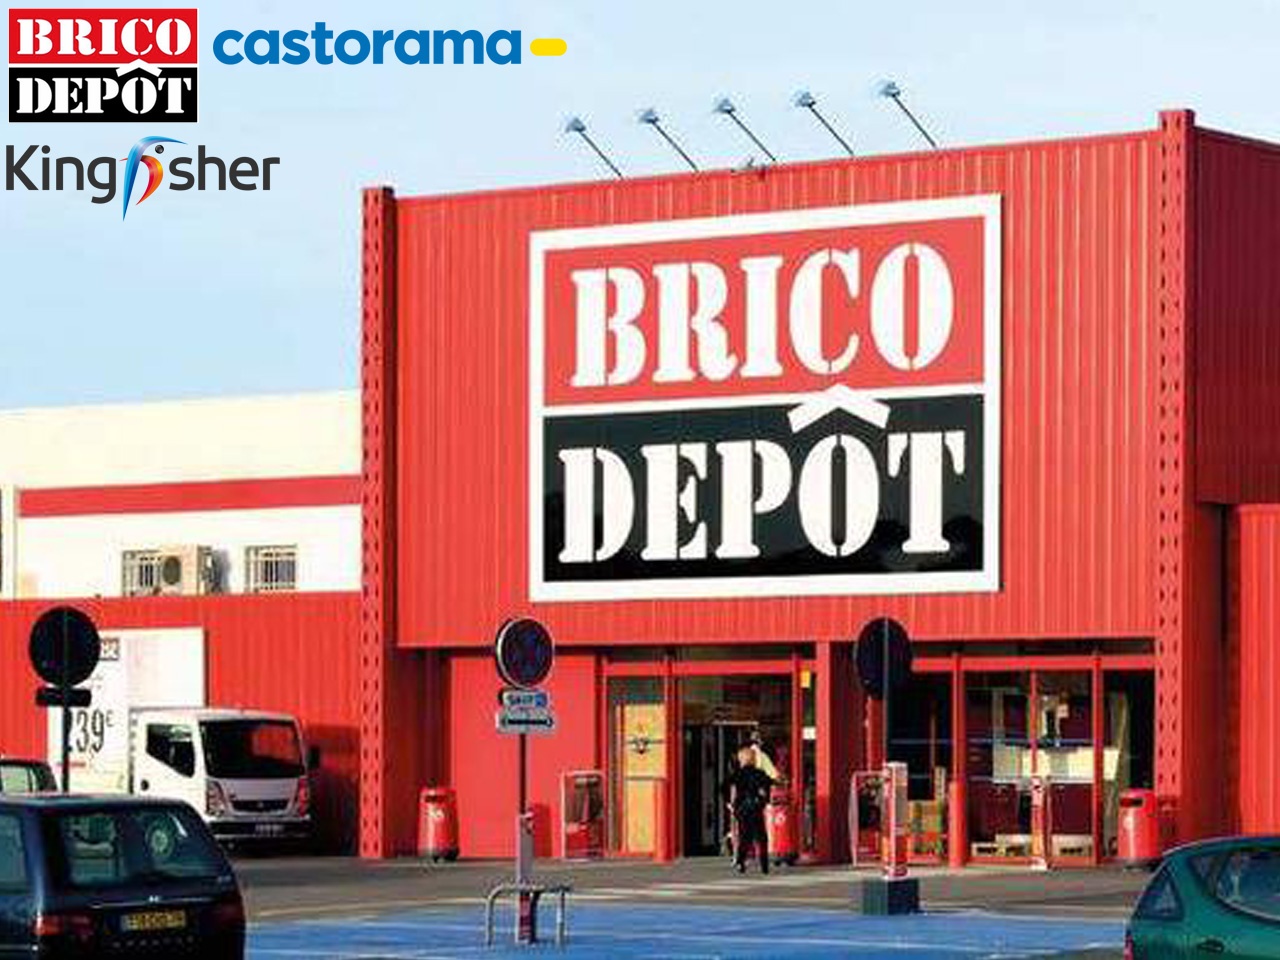 Les équipes de Brico Dépôt et Castorama recevront une prime de 1000€